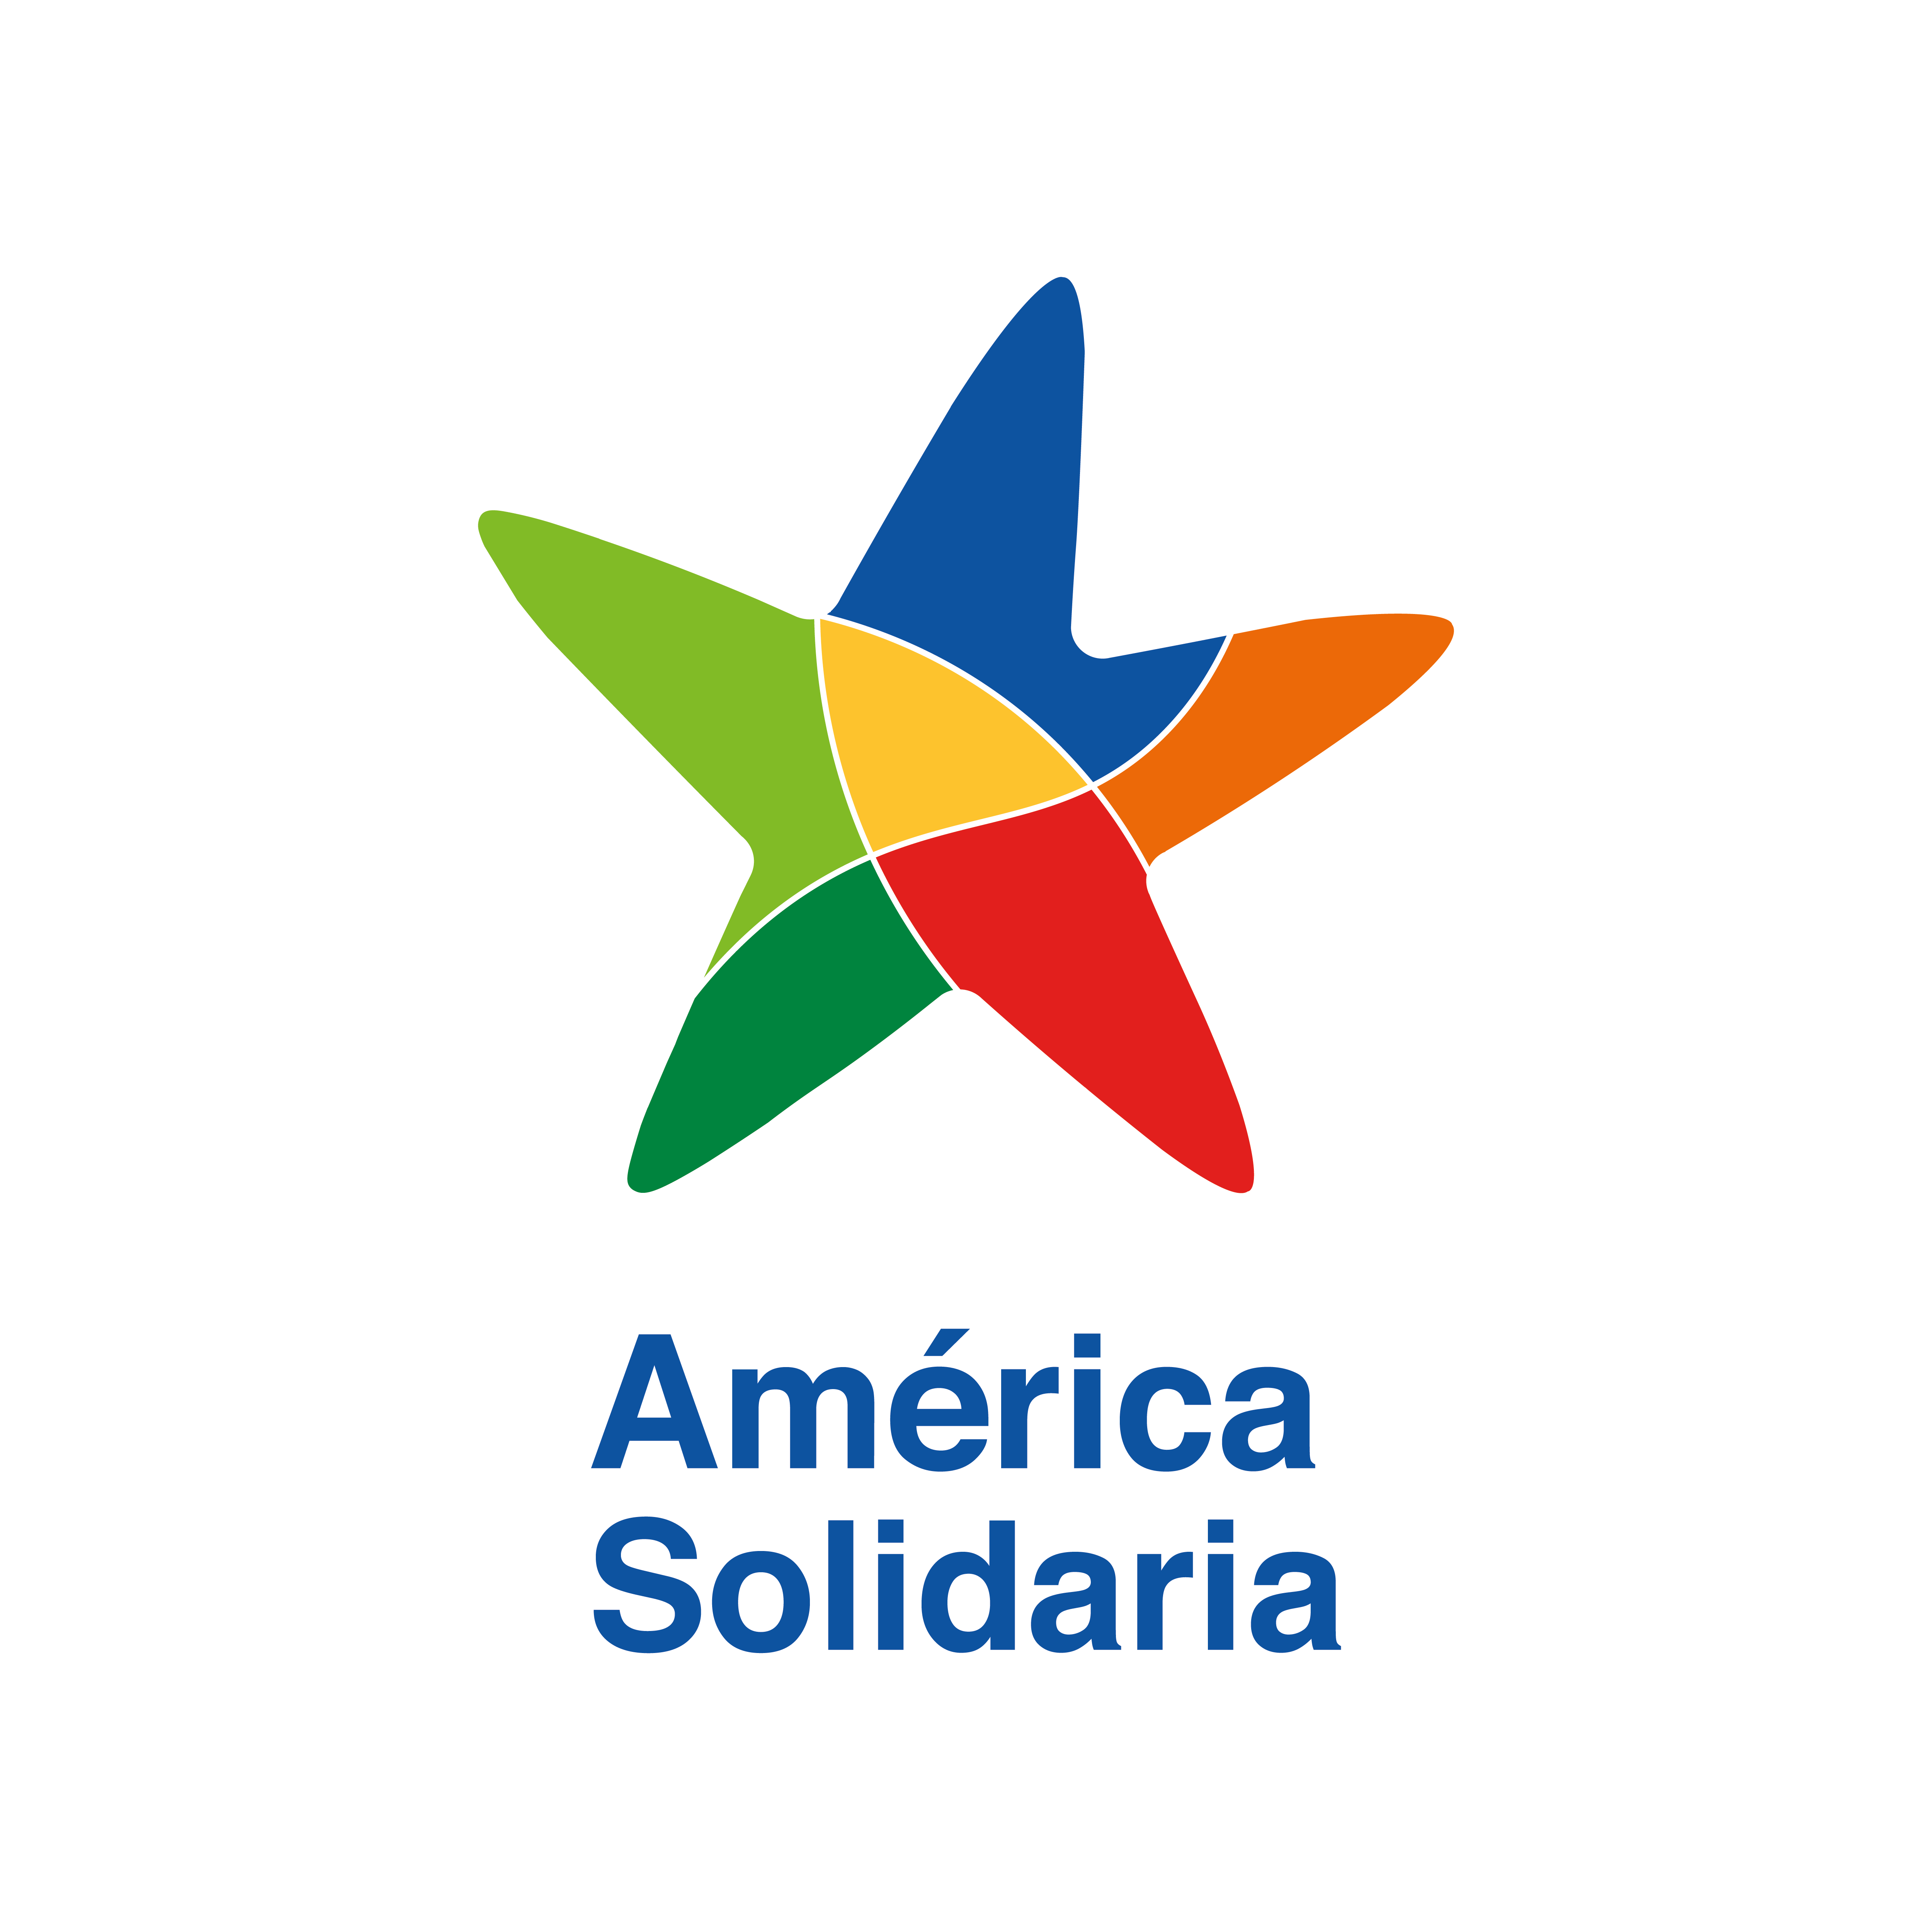 América Solidaria marca candidata a la III edición de Premios Internacionales Marcas que Enamoran. https://marcasqueenamoran.es/votacion-publica